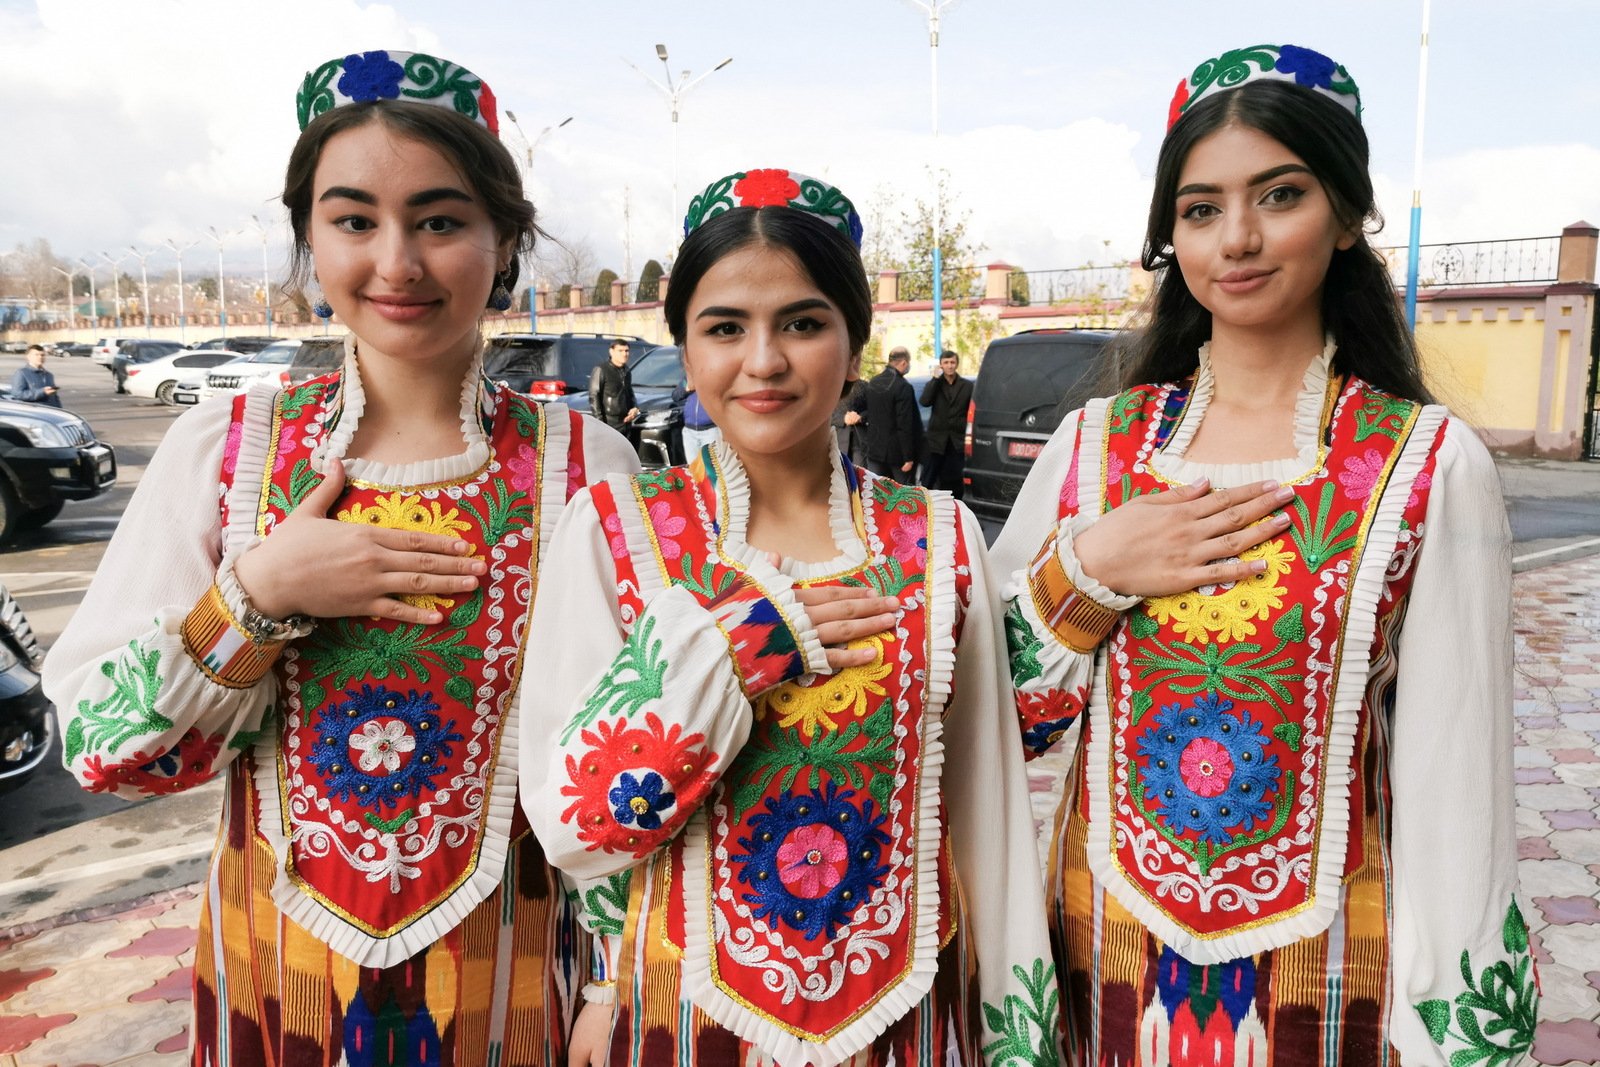 Таджики